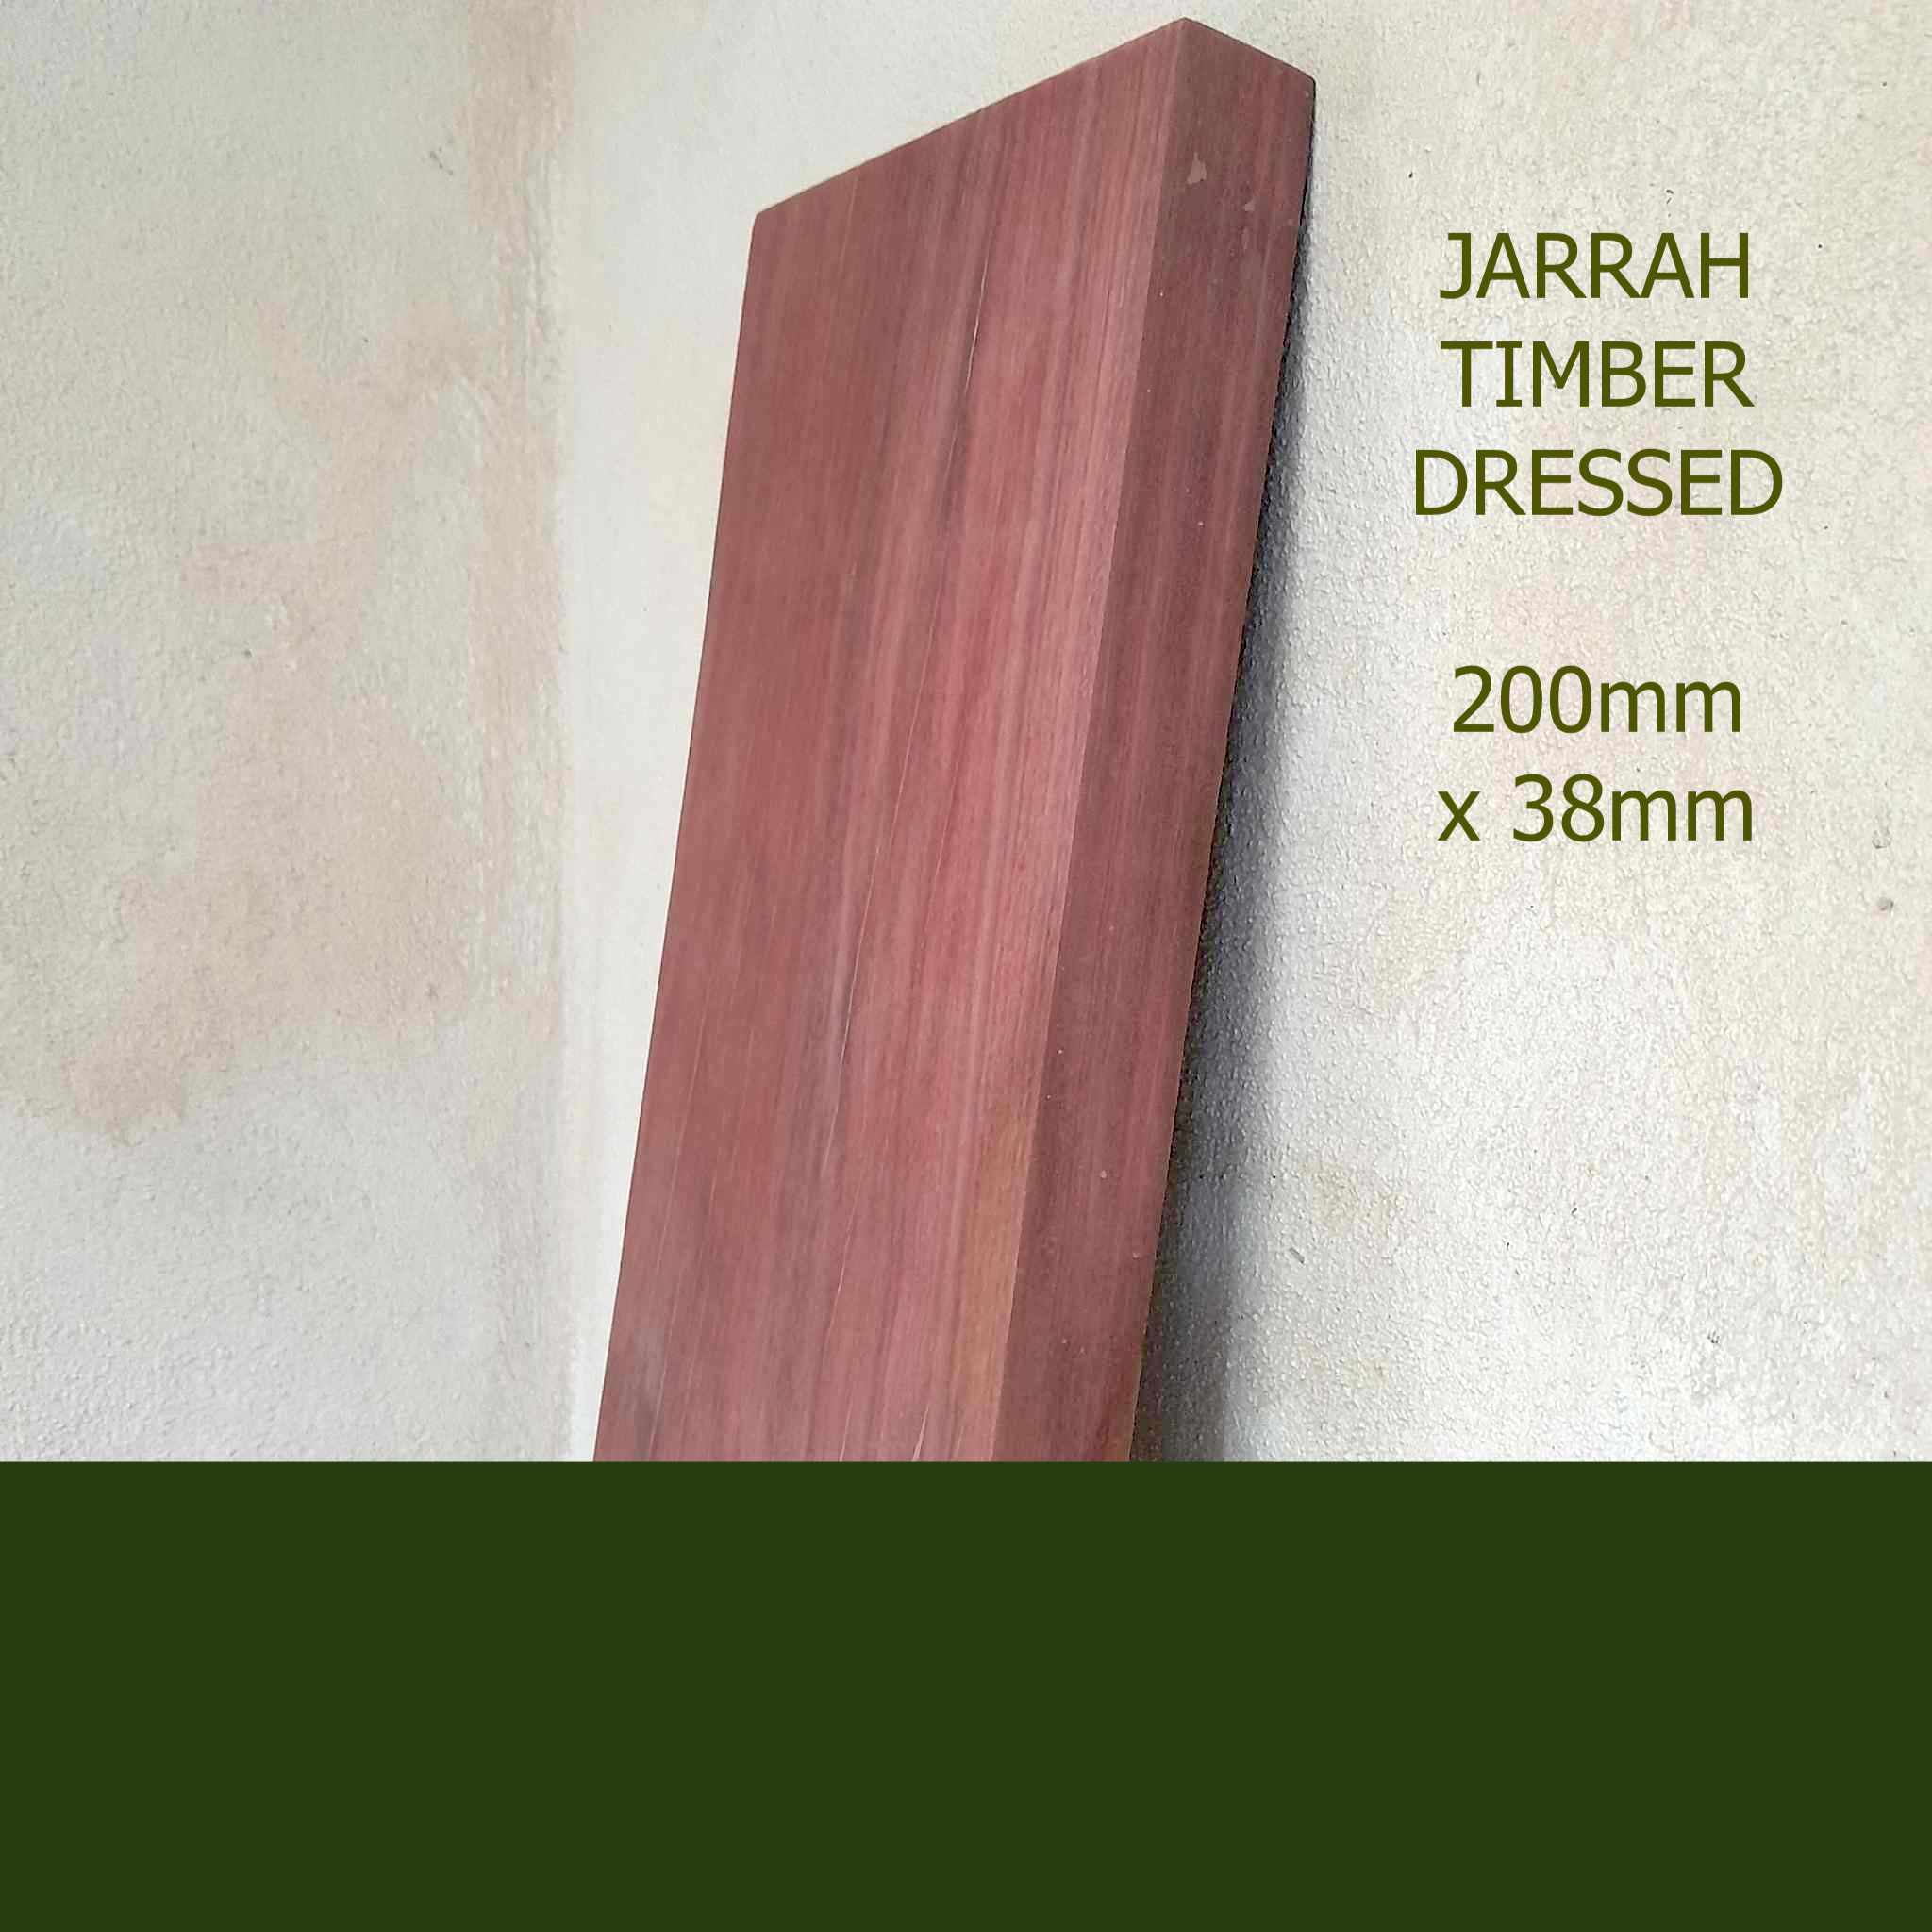 Timber Jarrah Dressed All Round DAR Perth